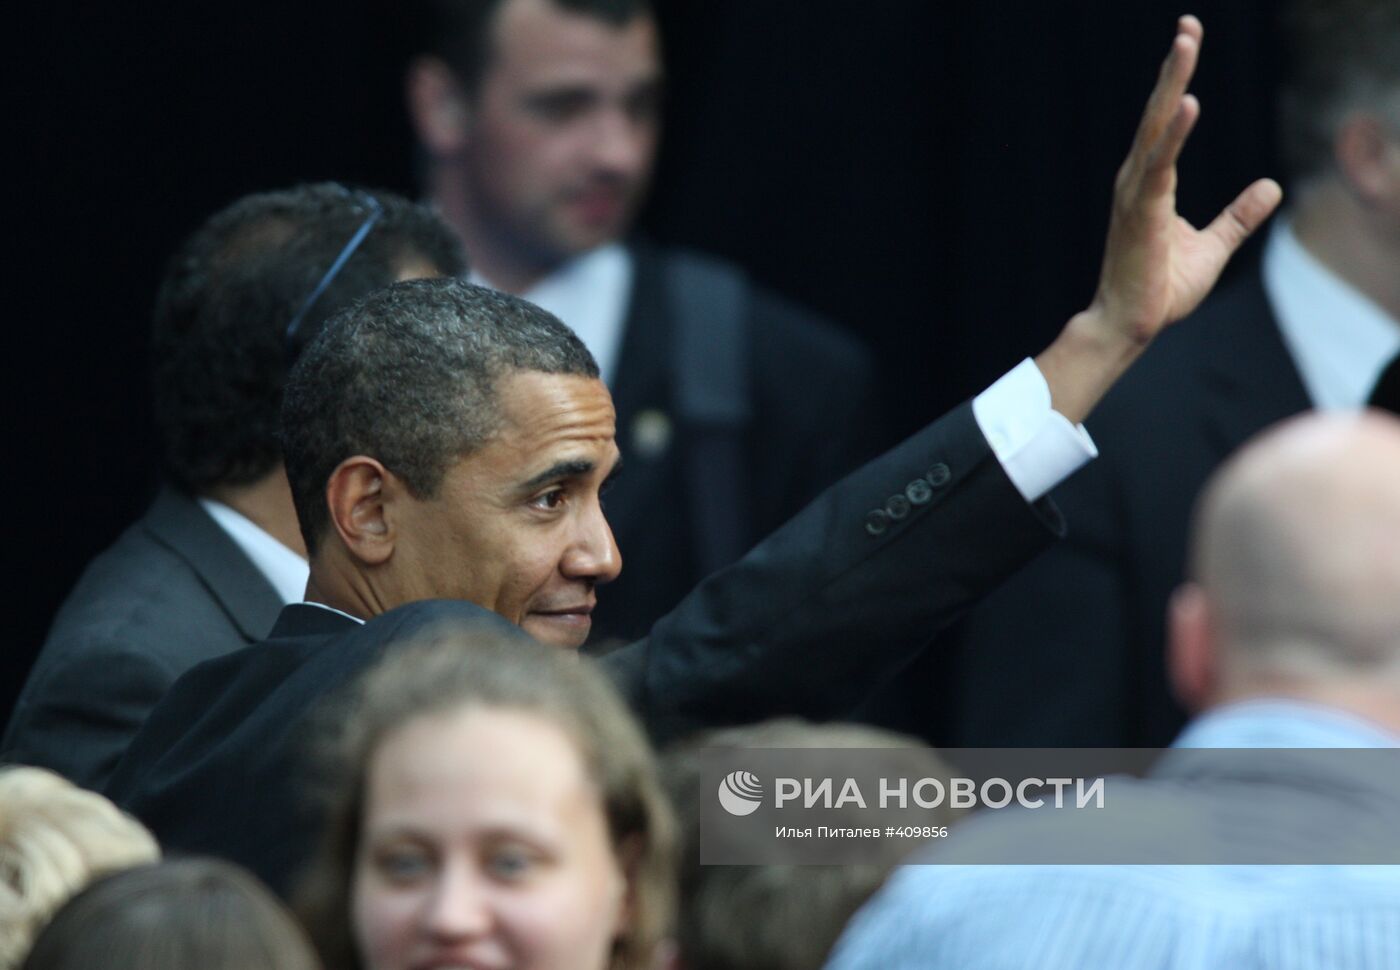 Второй день рабочего визита президента США Б.Обамы в Россию